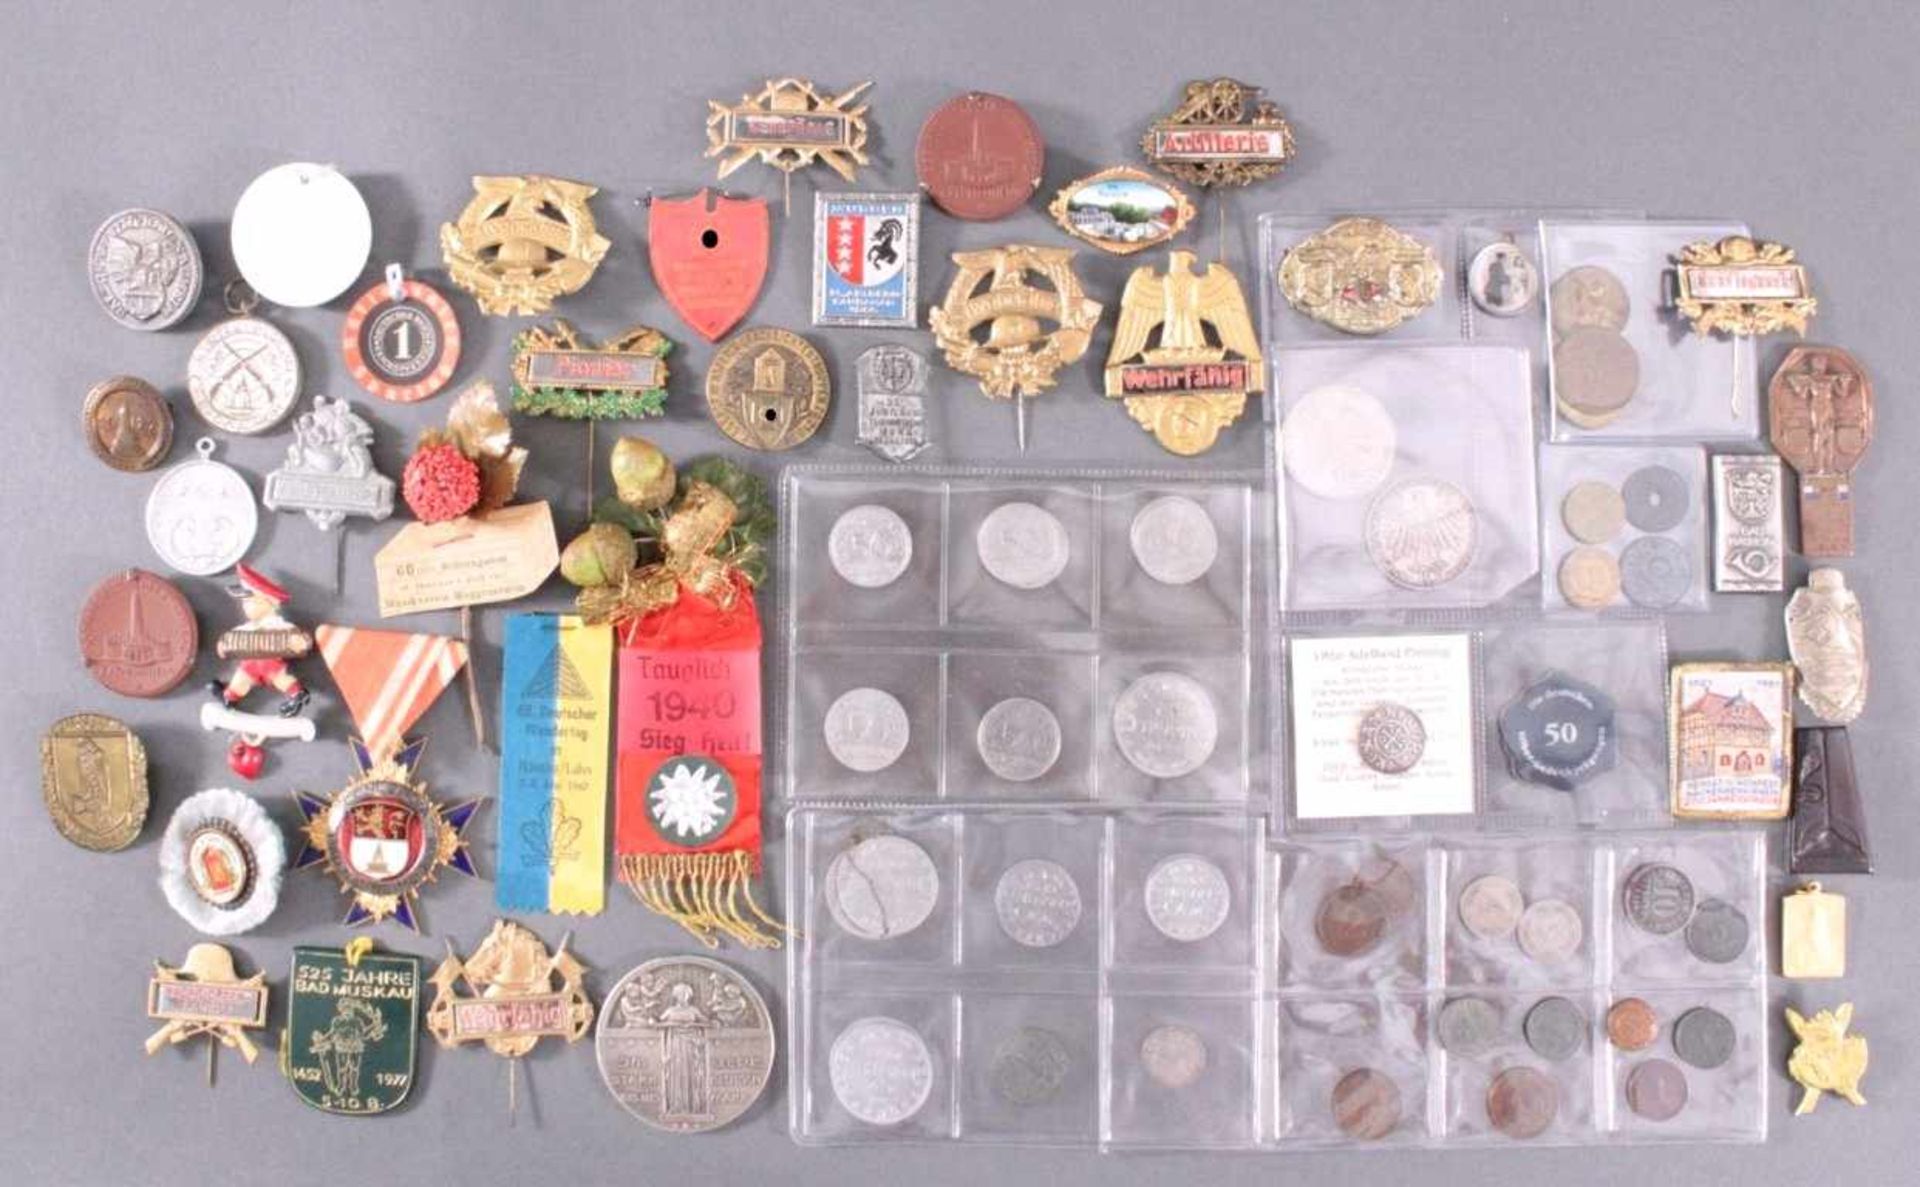 Münzen, Tagungs- und Veranstaltungsabzeichen Bad NauheimCa. 85 Stück, aus Metall, Porzellan, Holz,